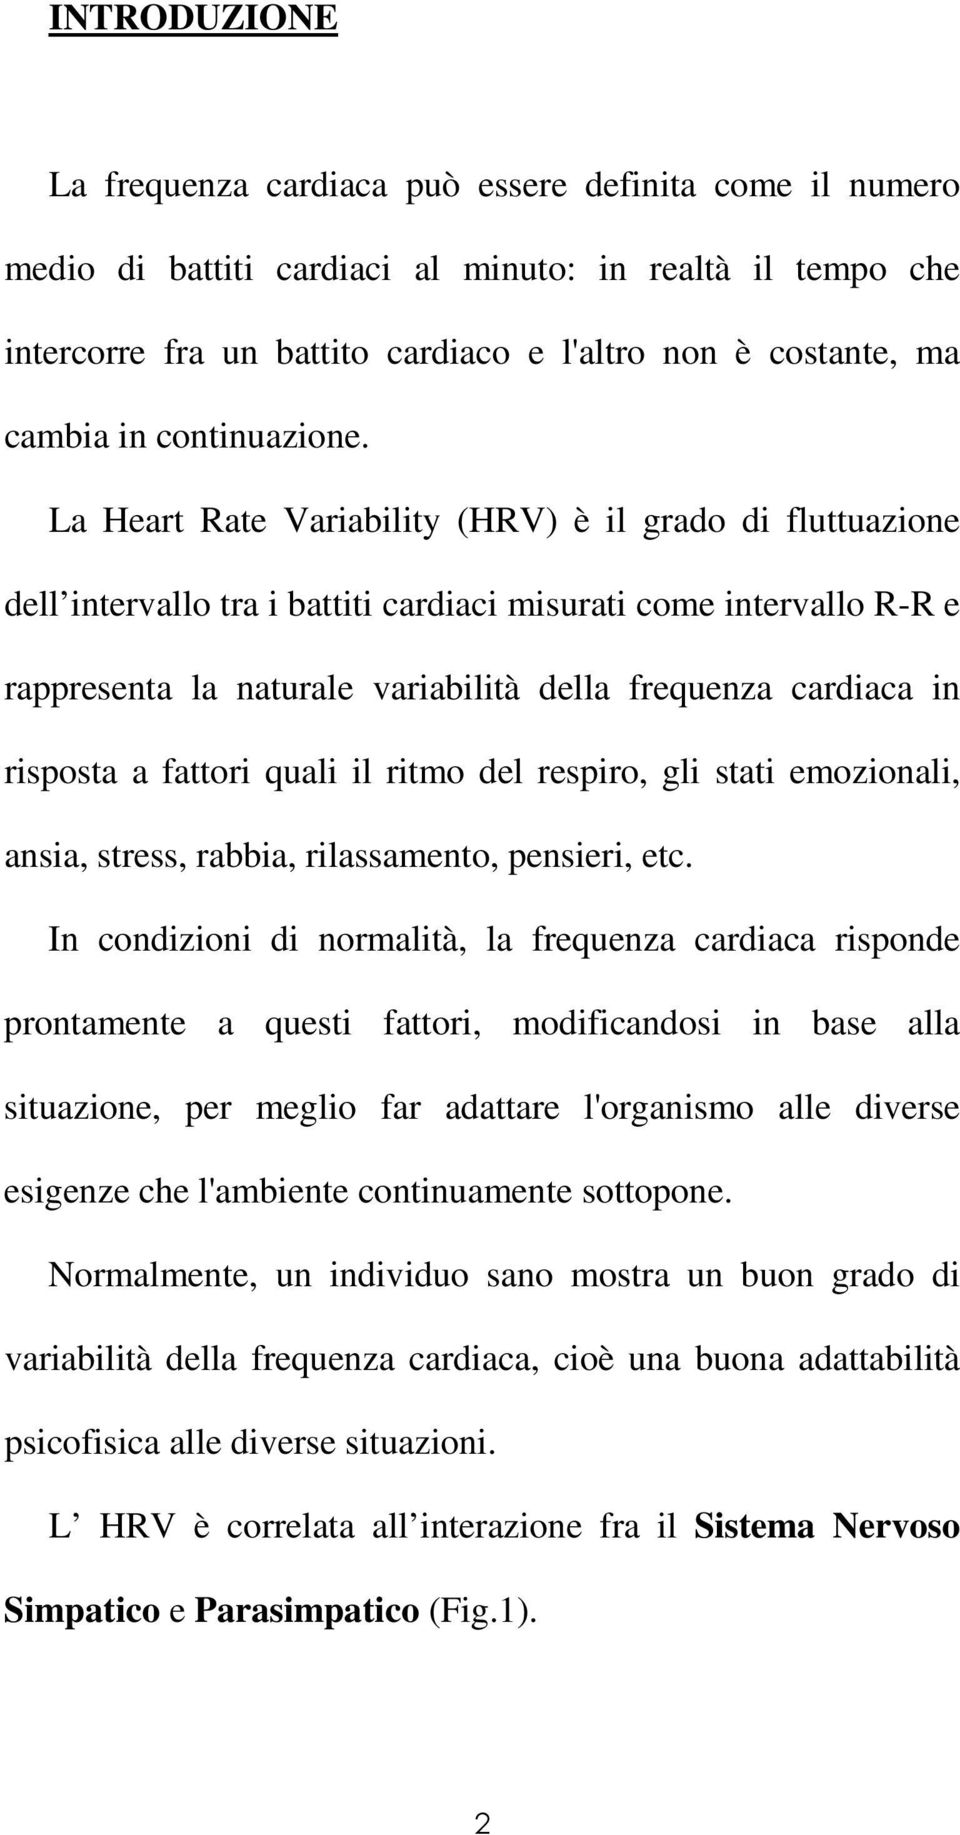 La Heart Rate Variability (HRV) è il grado di fluttuazione dell intervallo tra i battiti cardiaci misurati come intervallo R-R e rappresenta la naturale variabilità della frequenza cardiaca in